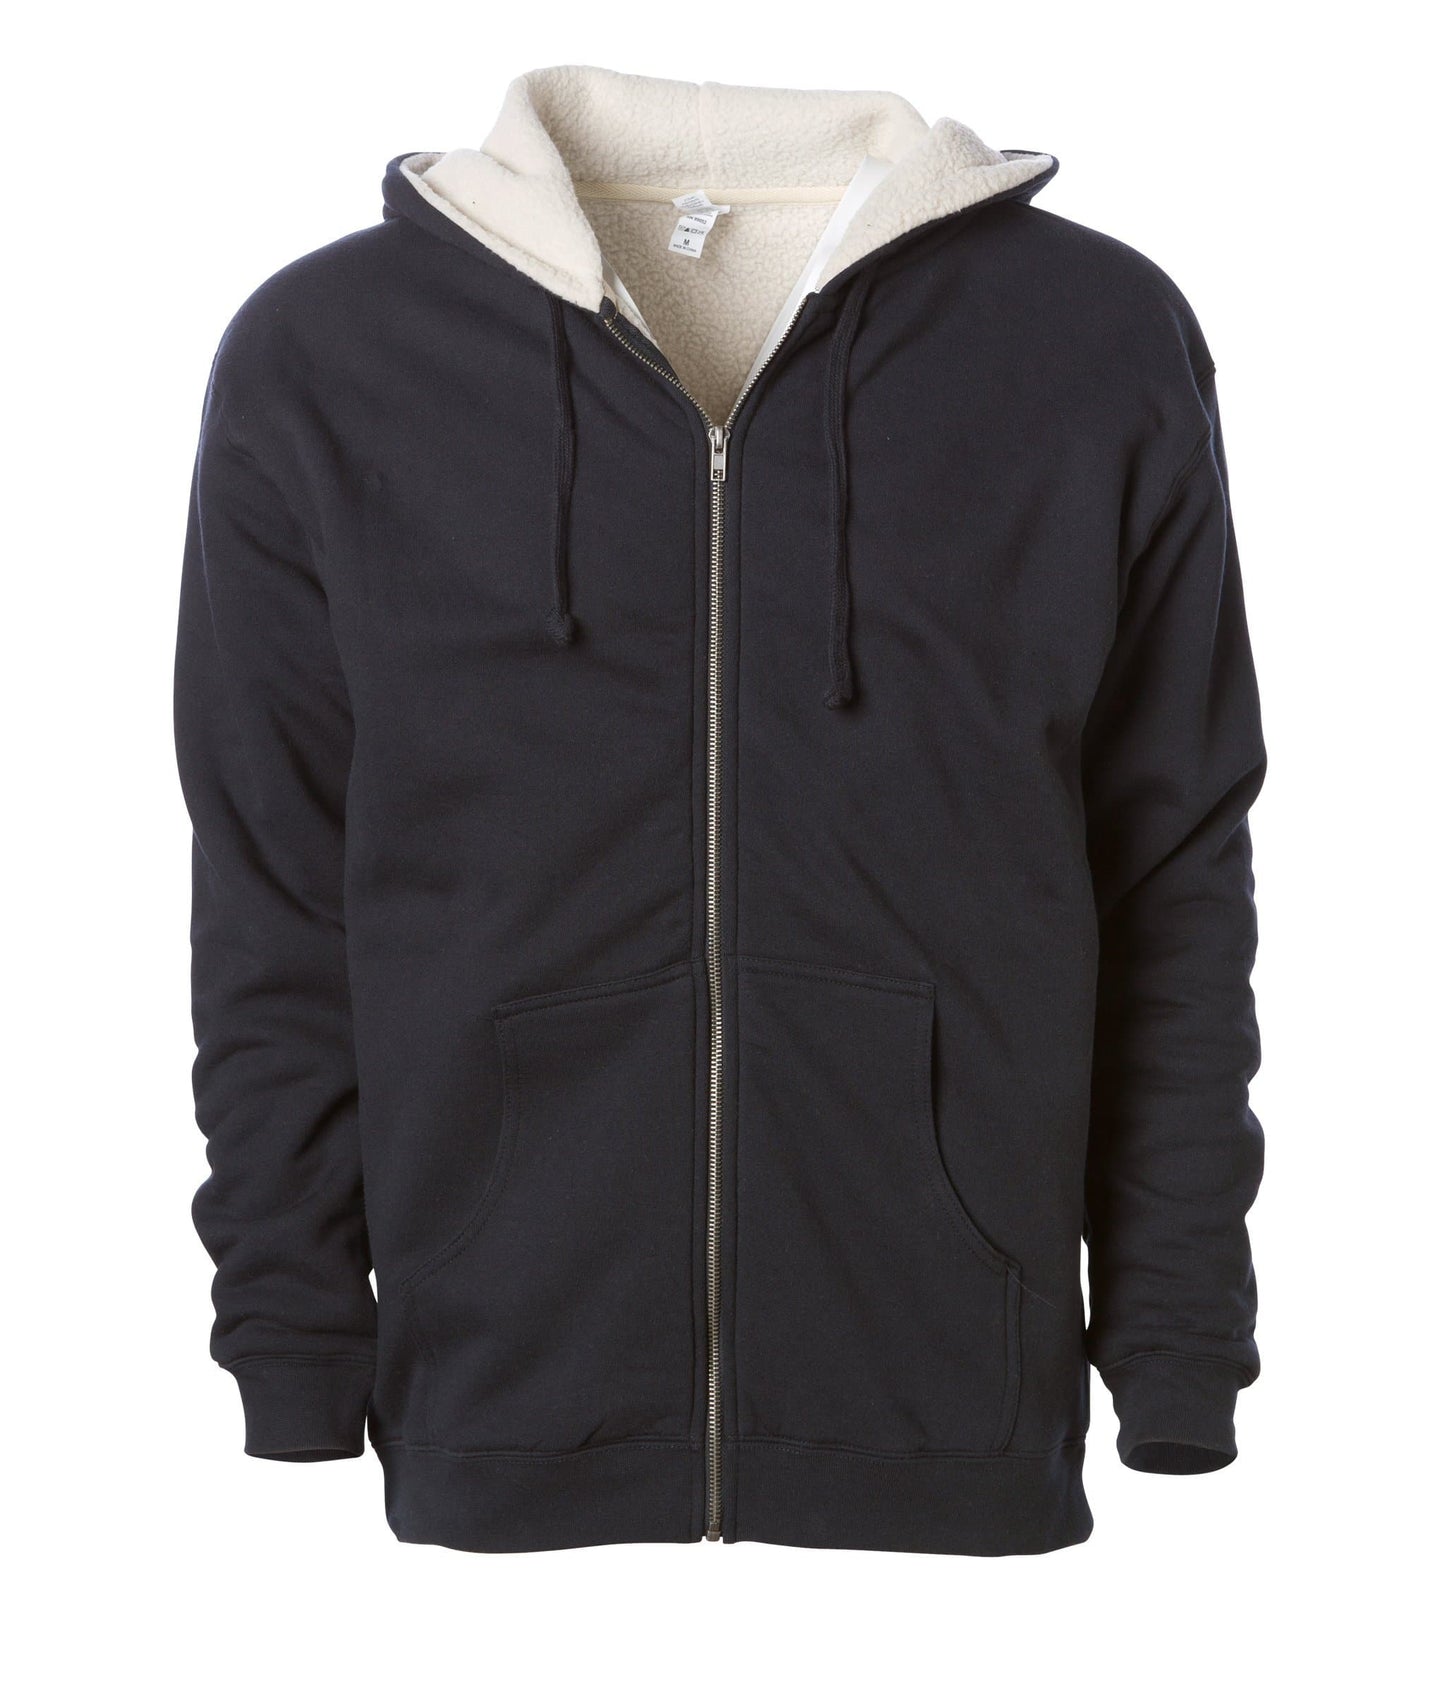 EXP40SHZ Sherpa Lined Zip Hooded Sweatshirt - Black / S ZIPS